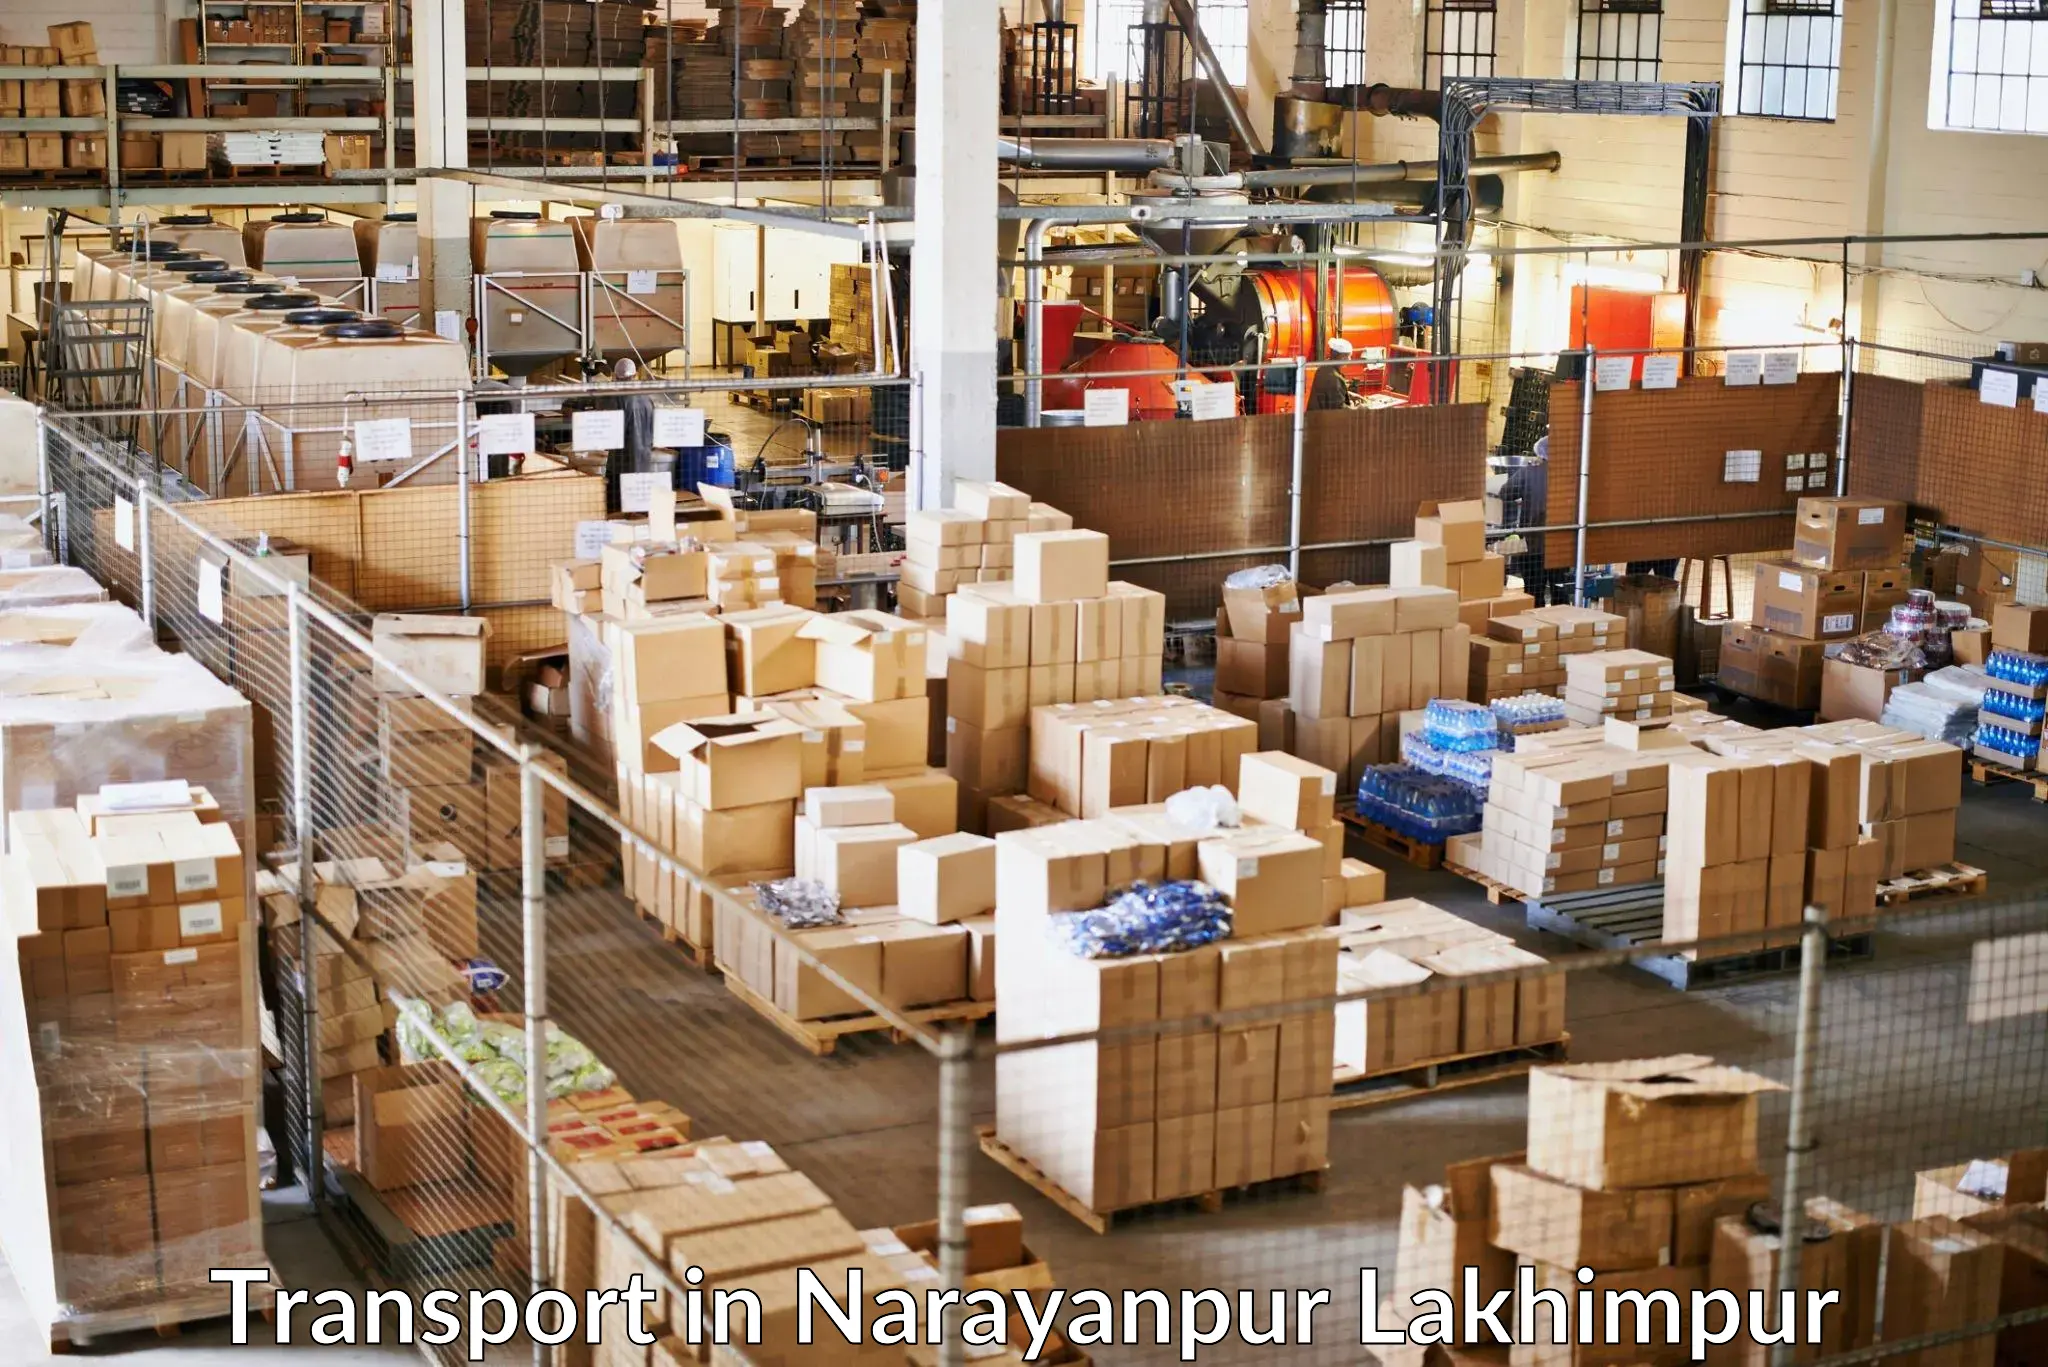 Online transport booking in Narayanpur Lakhimpur